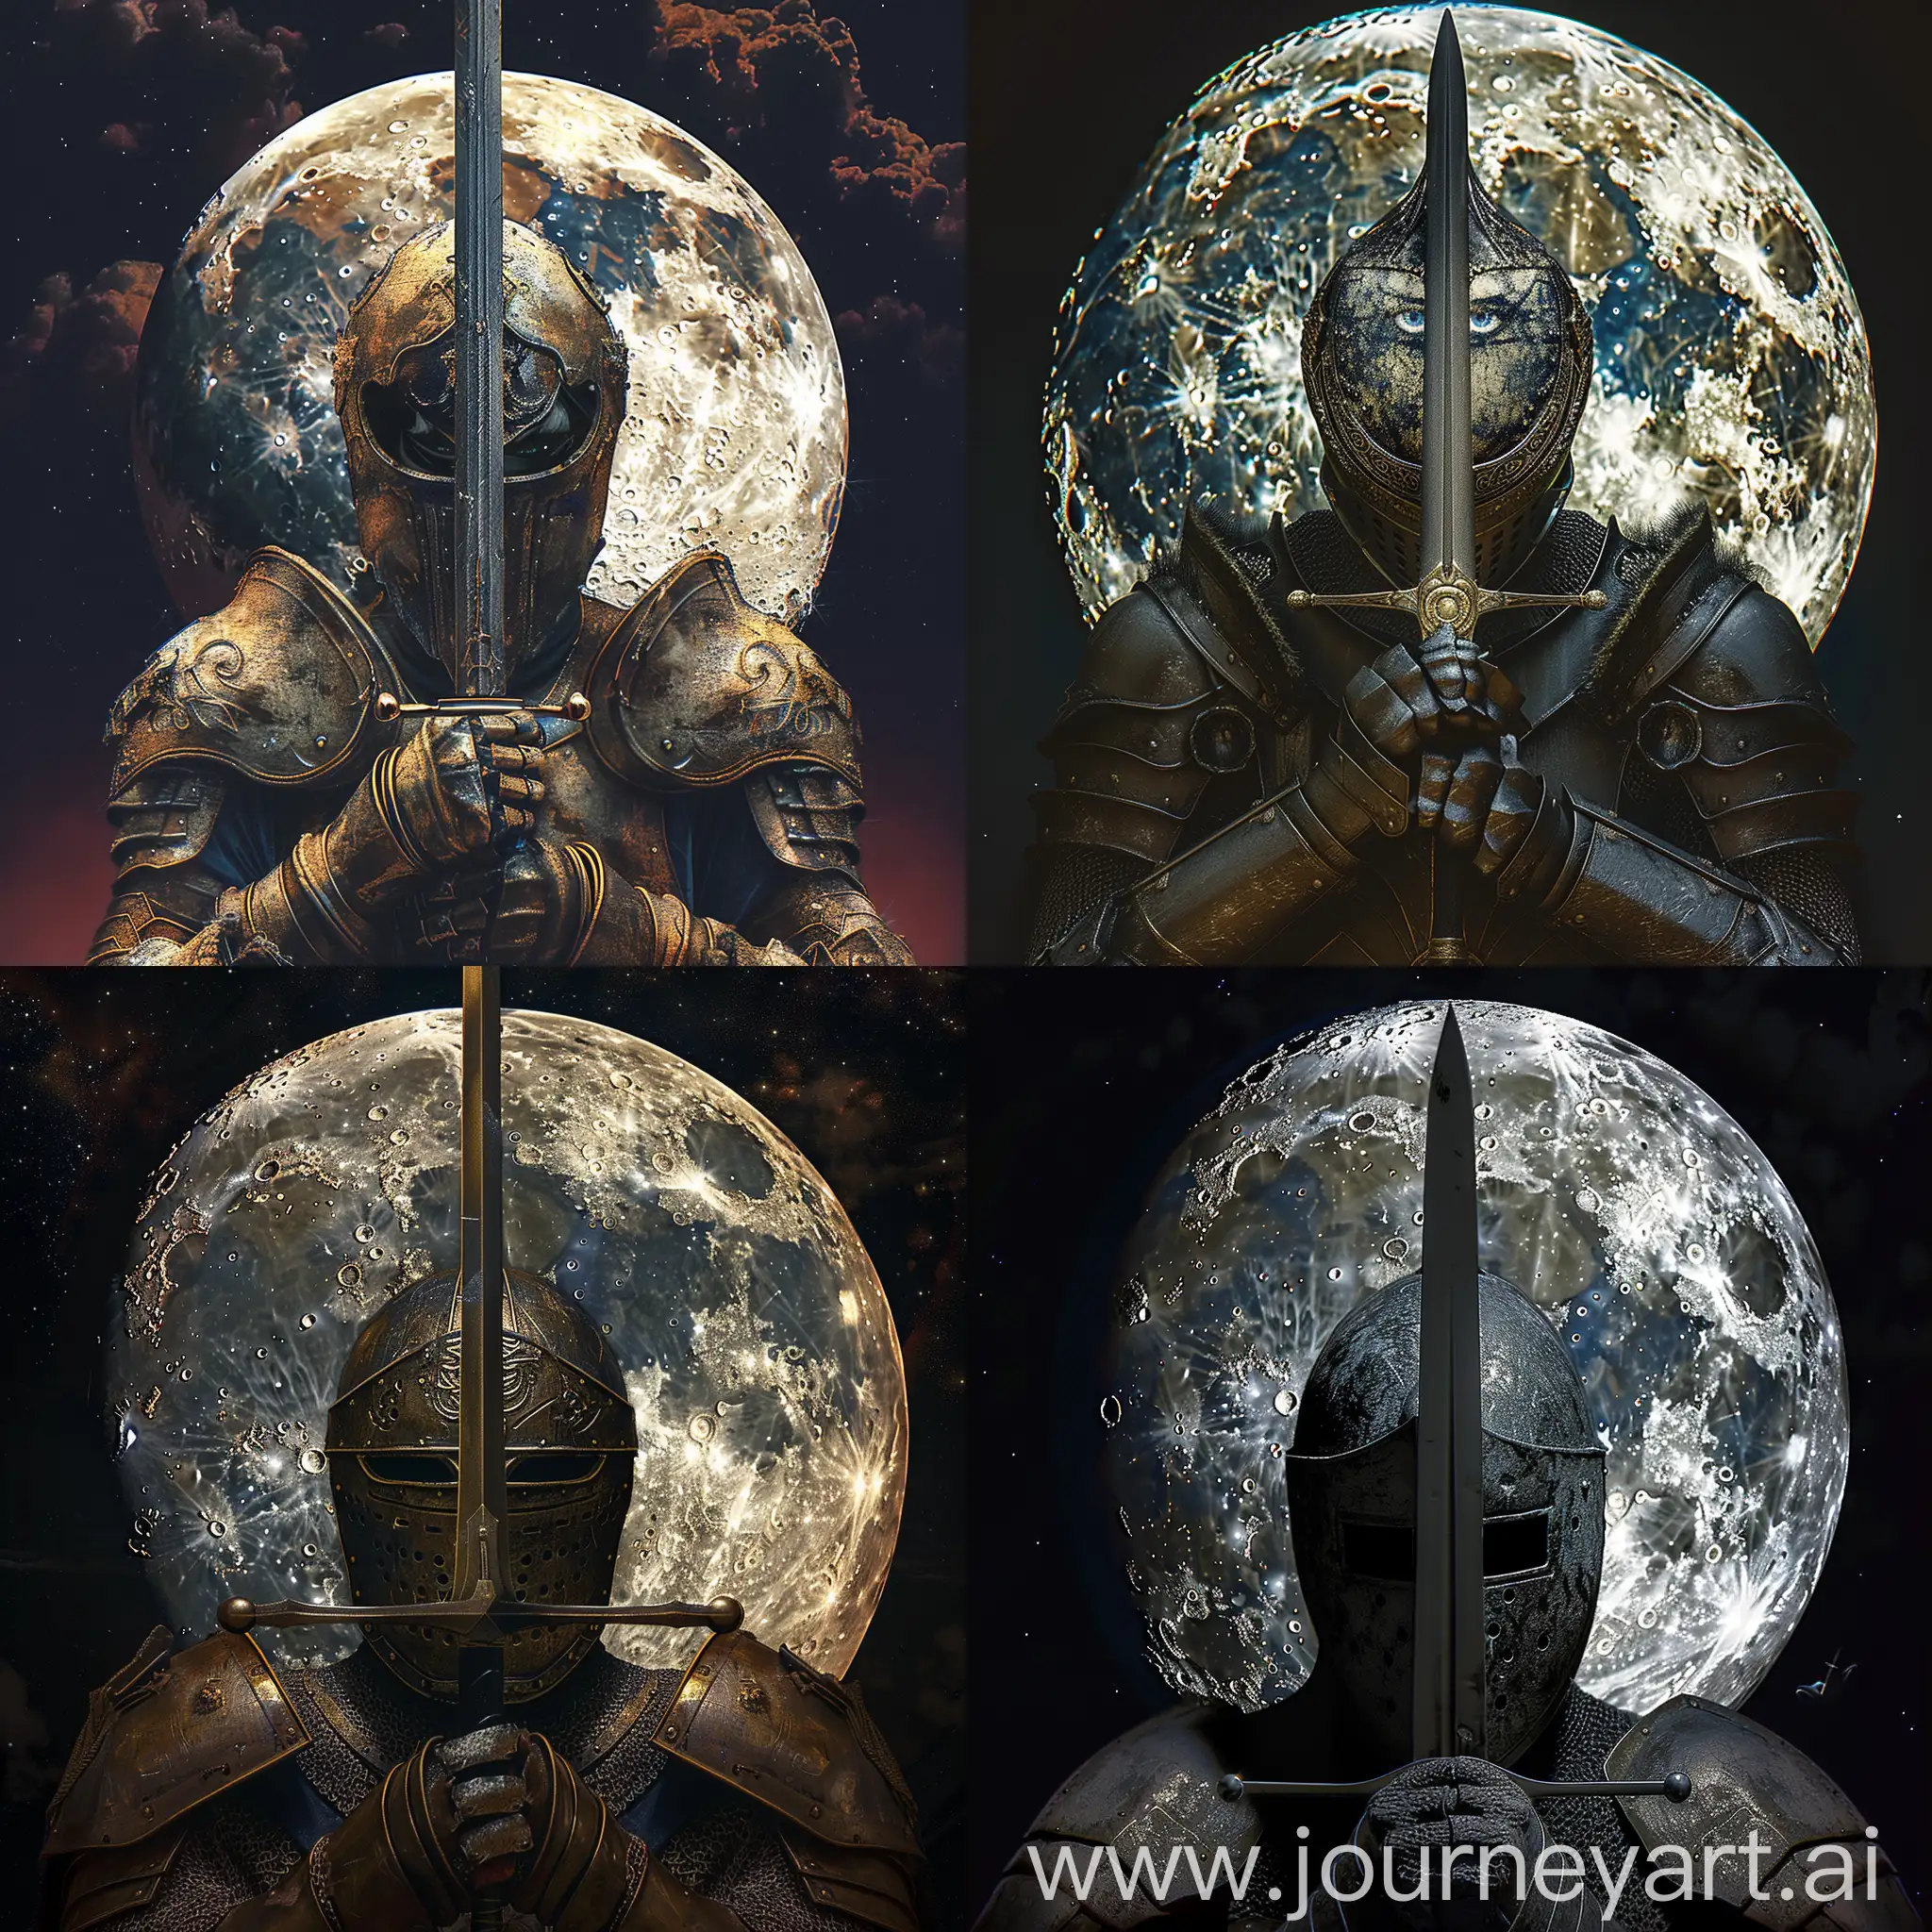 Fantasy-Knight-Holding-Sword-in-Moonlight